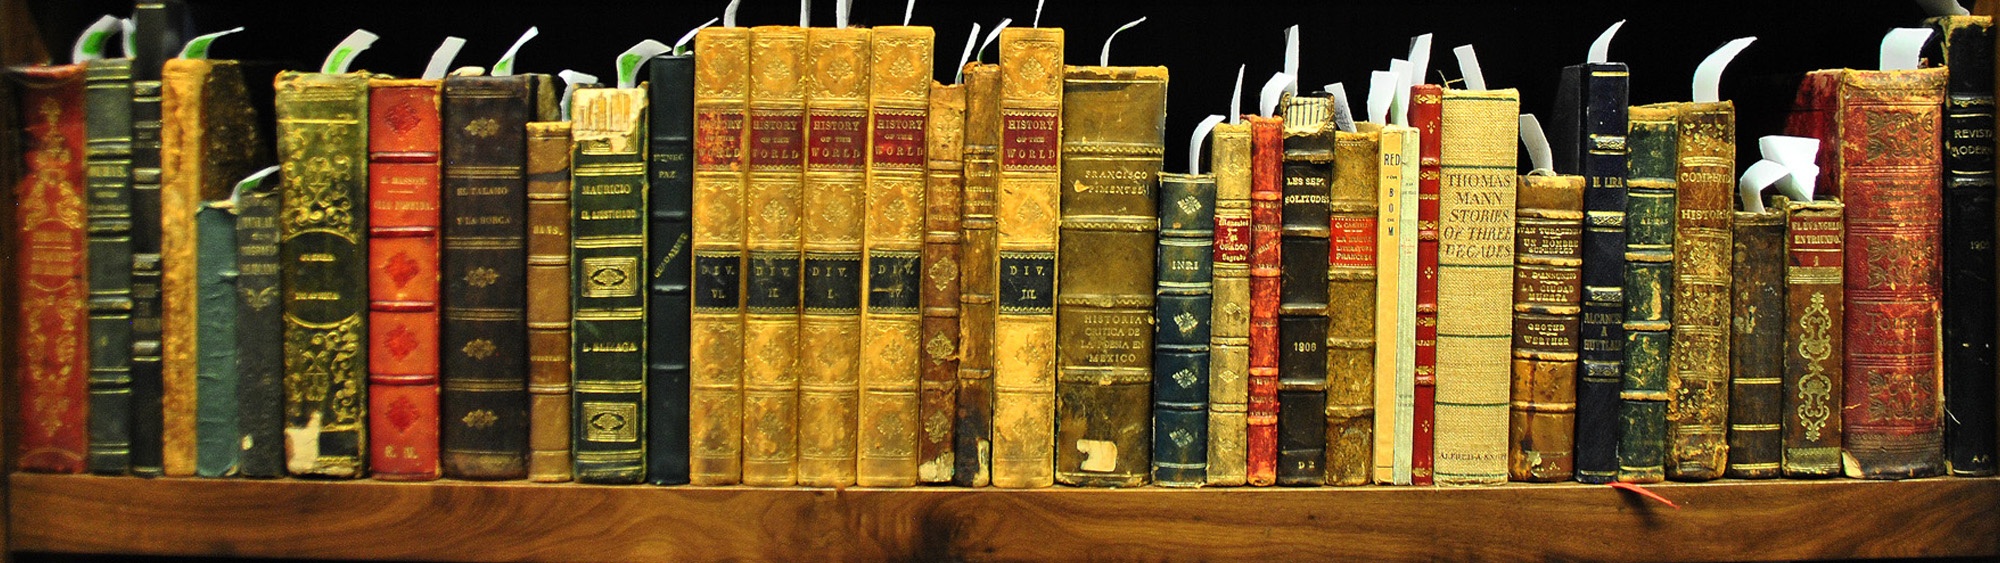 Libros antiguos en estantería